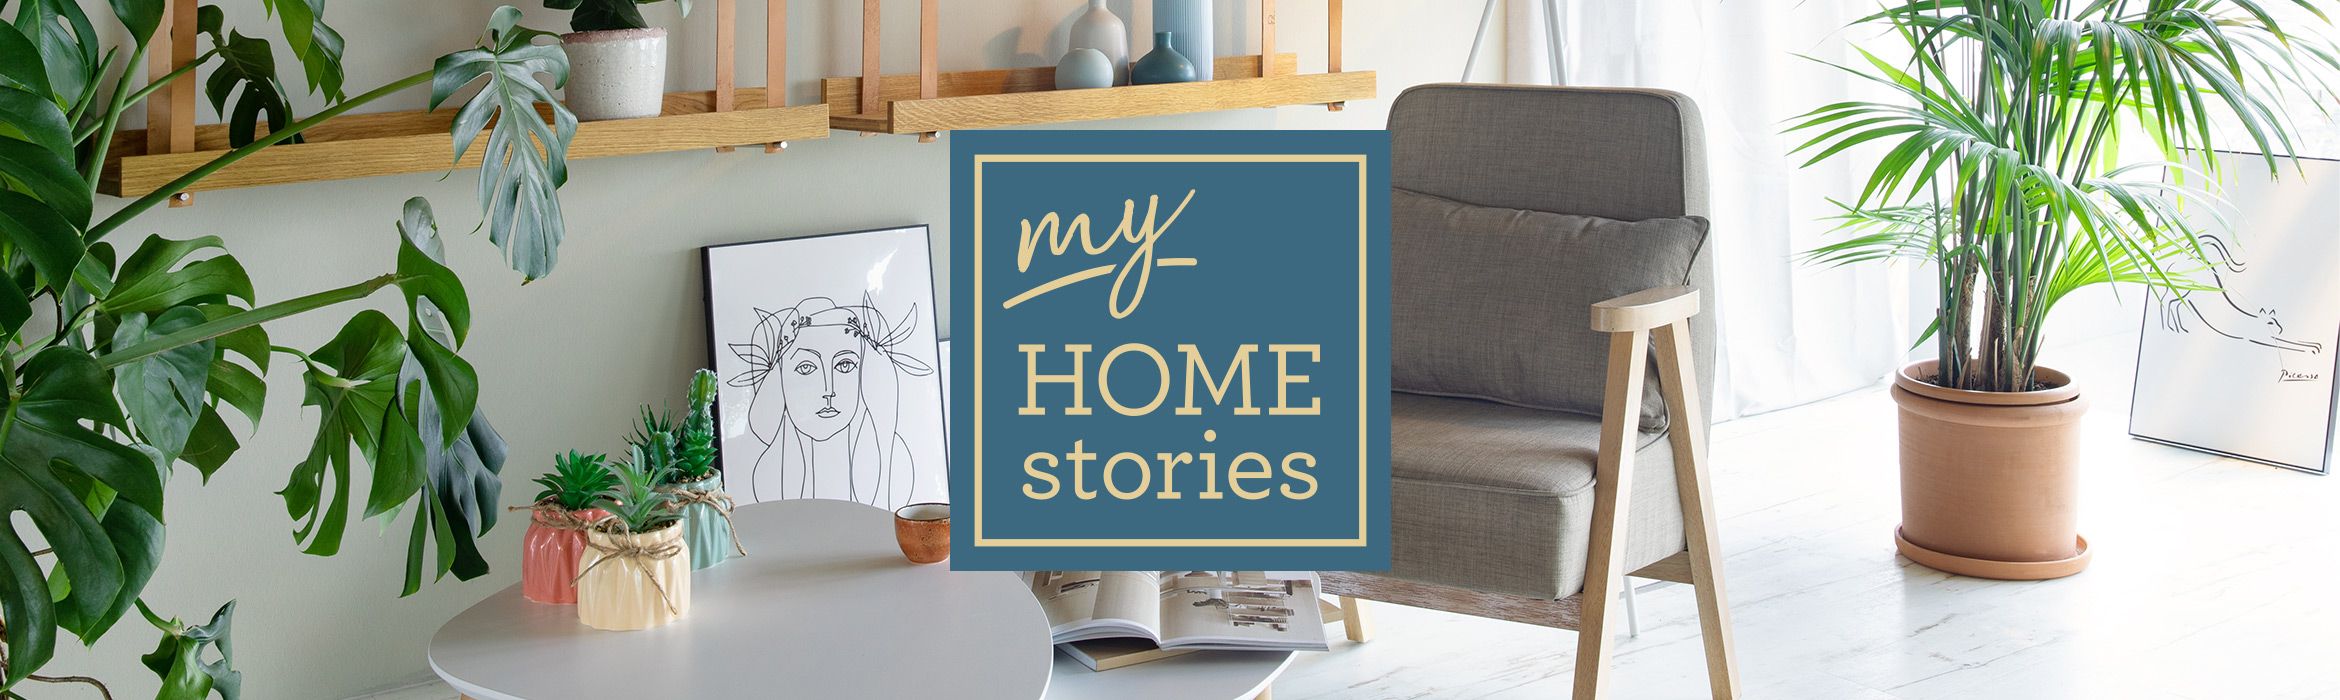 my HOME stories Kleinmöbel und Accessoires